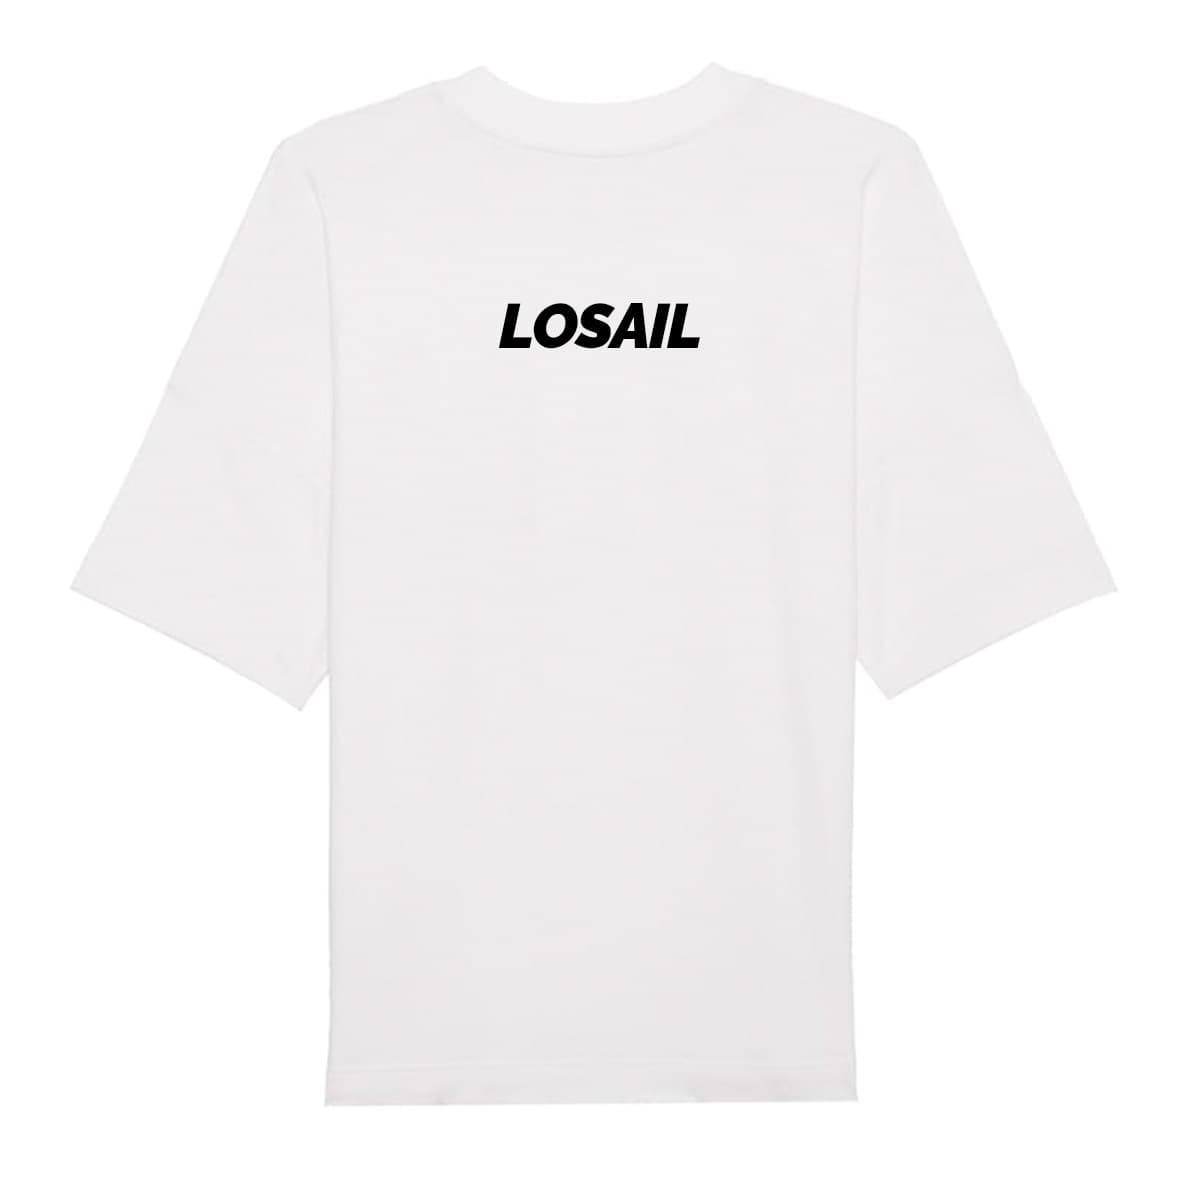 Losail circuit T-Shirt